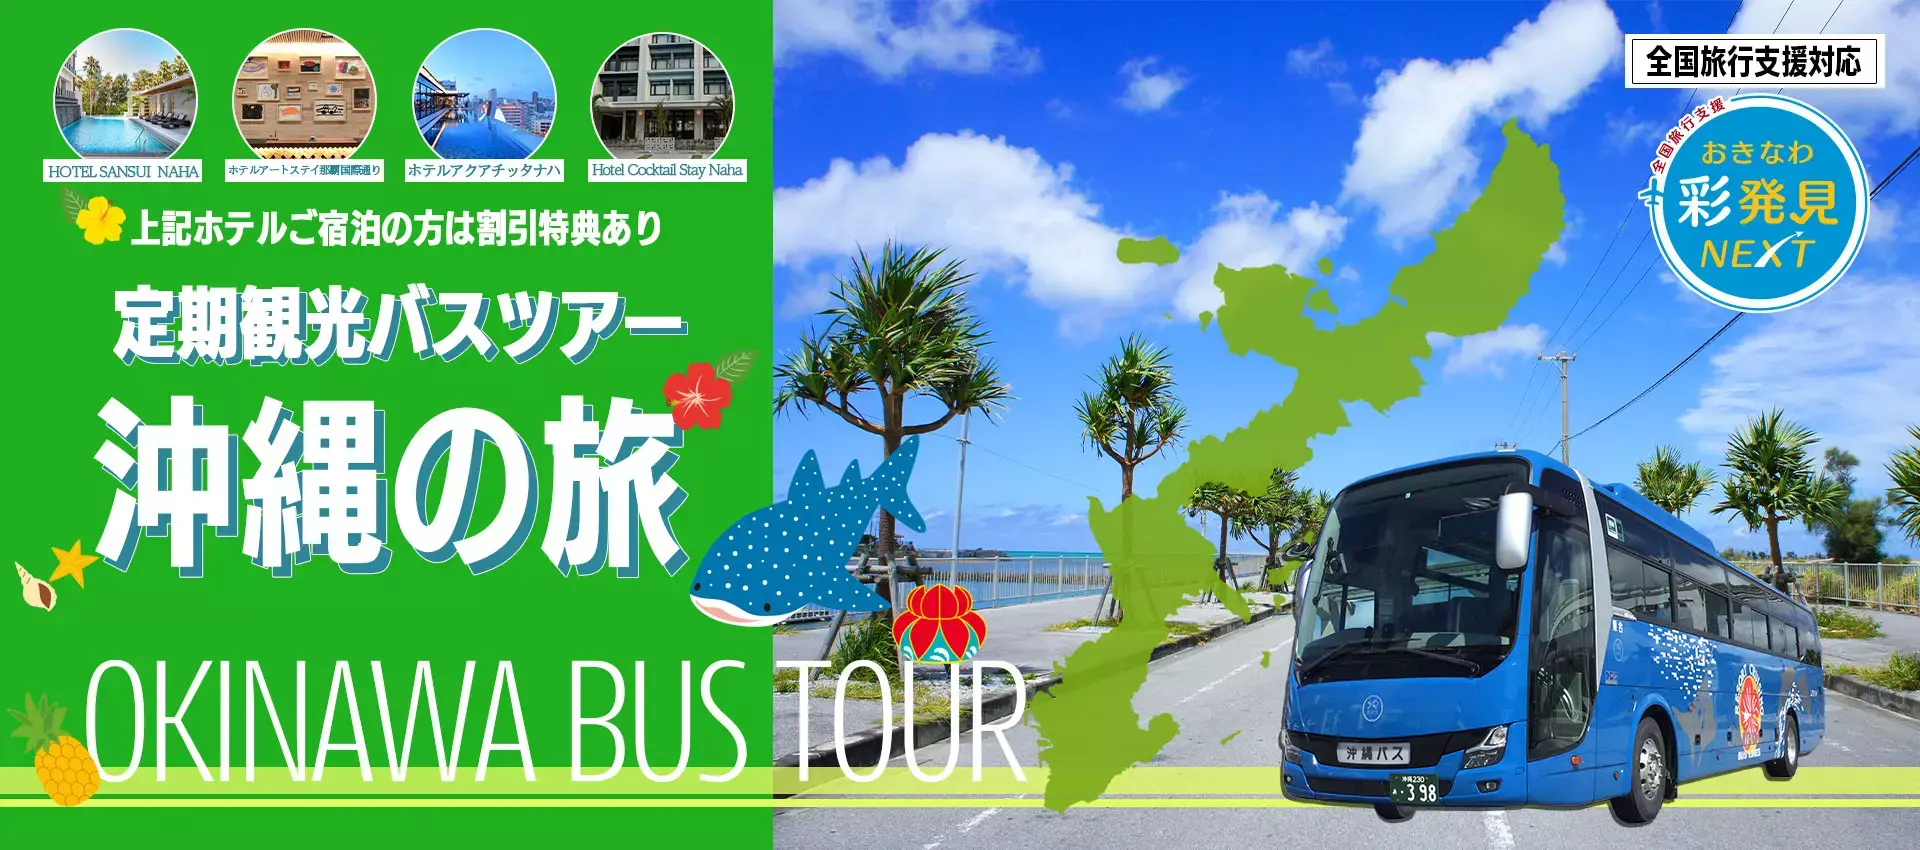 定期観光バスツアー沖縄の旅